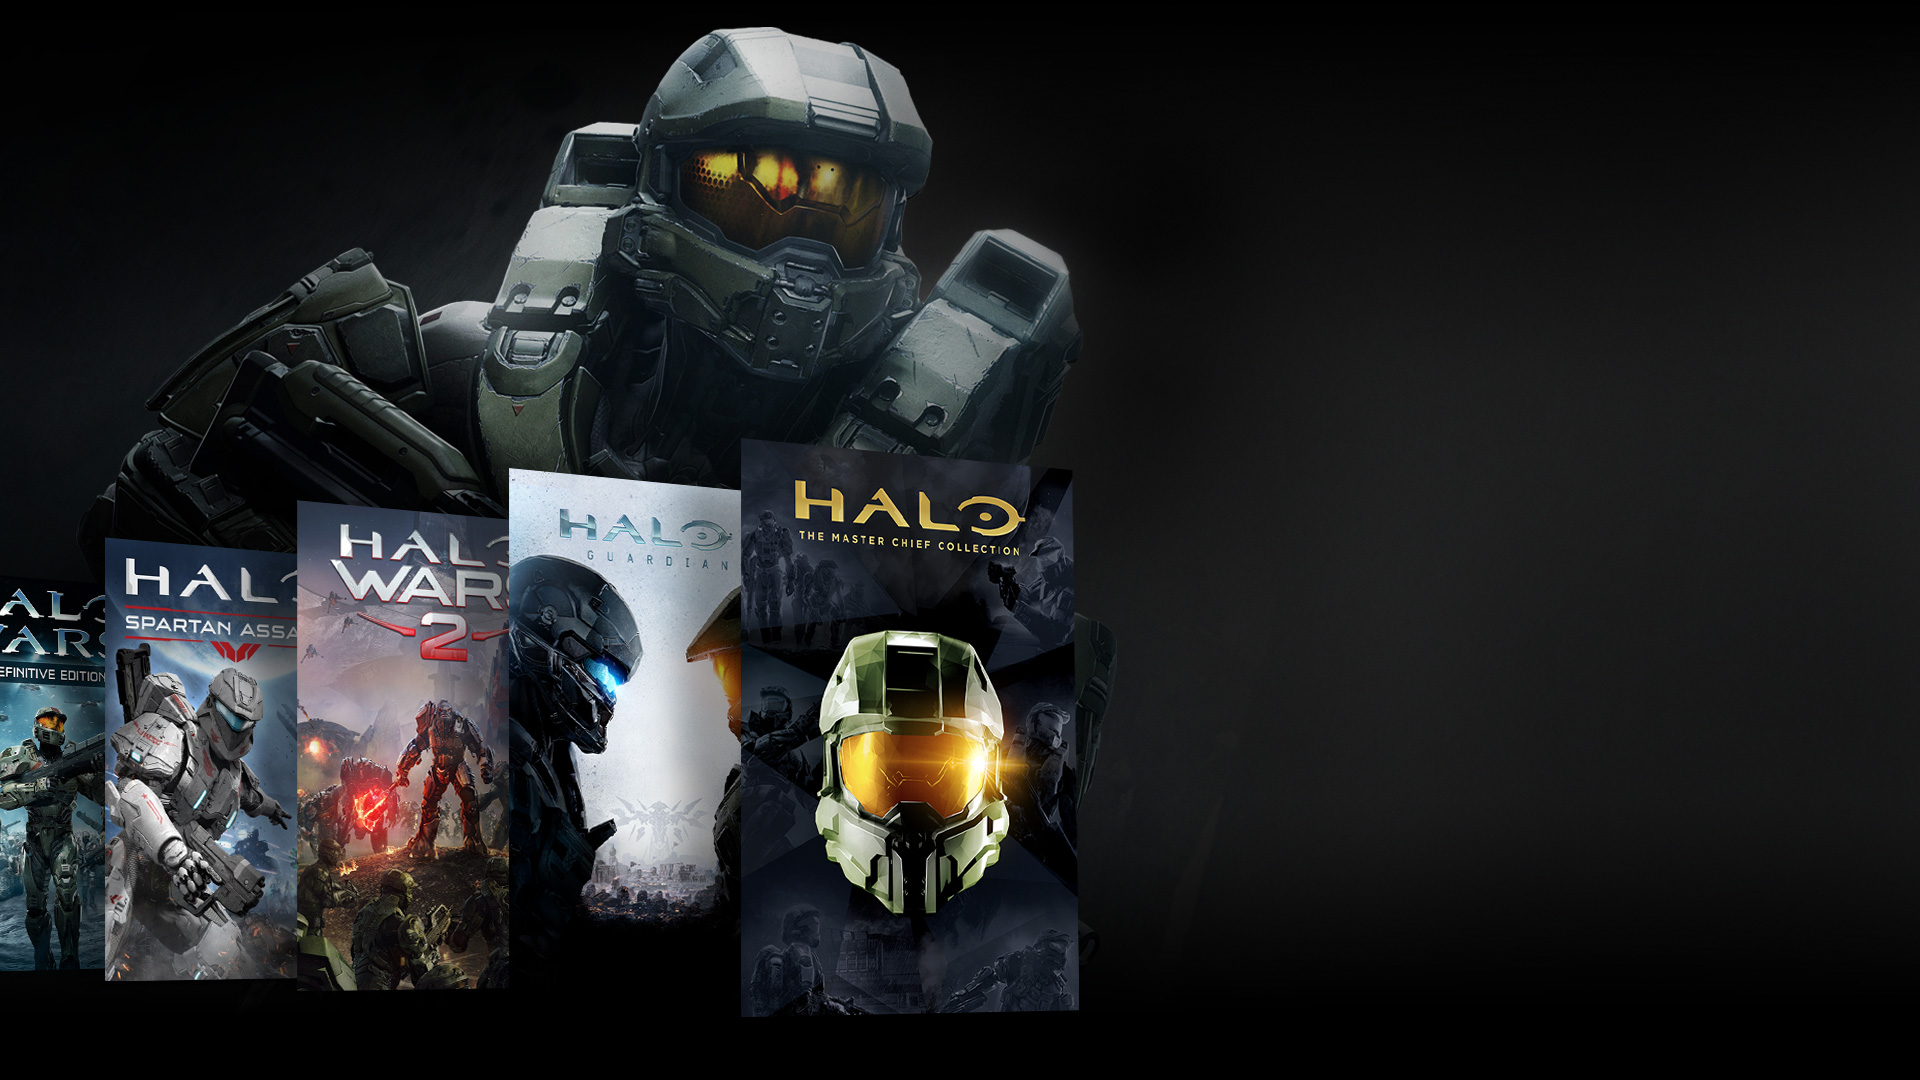 Halo-karakter set forfra, der står bag en kollage af Halo-spil